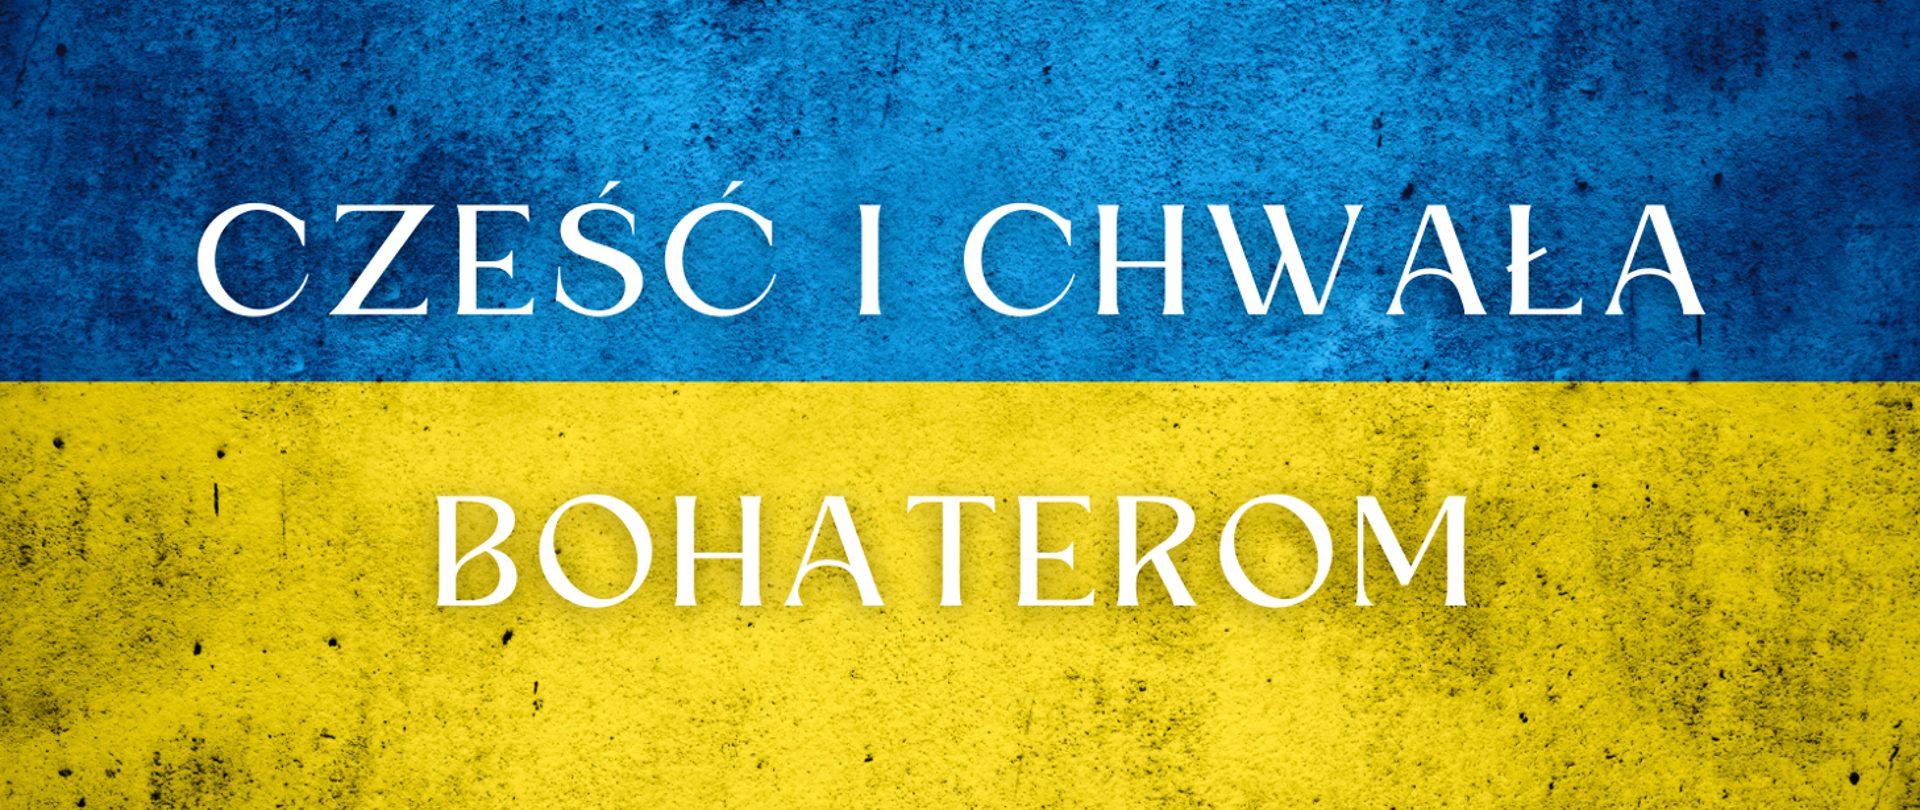 Niebiesko - żółta flaga Ukrainy a na niej napis "Cześć i chwała bohaterom". 